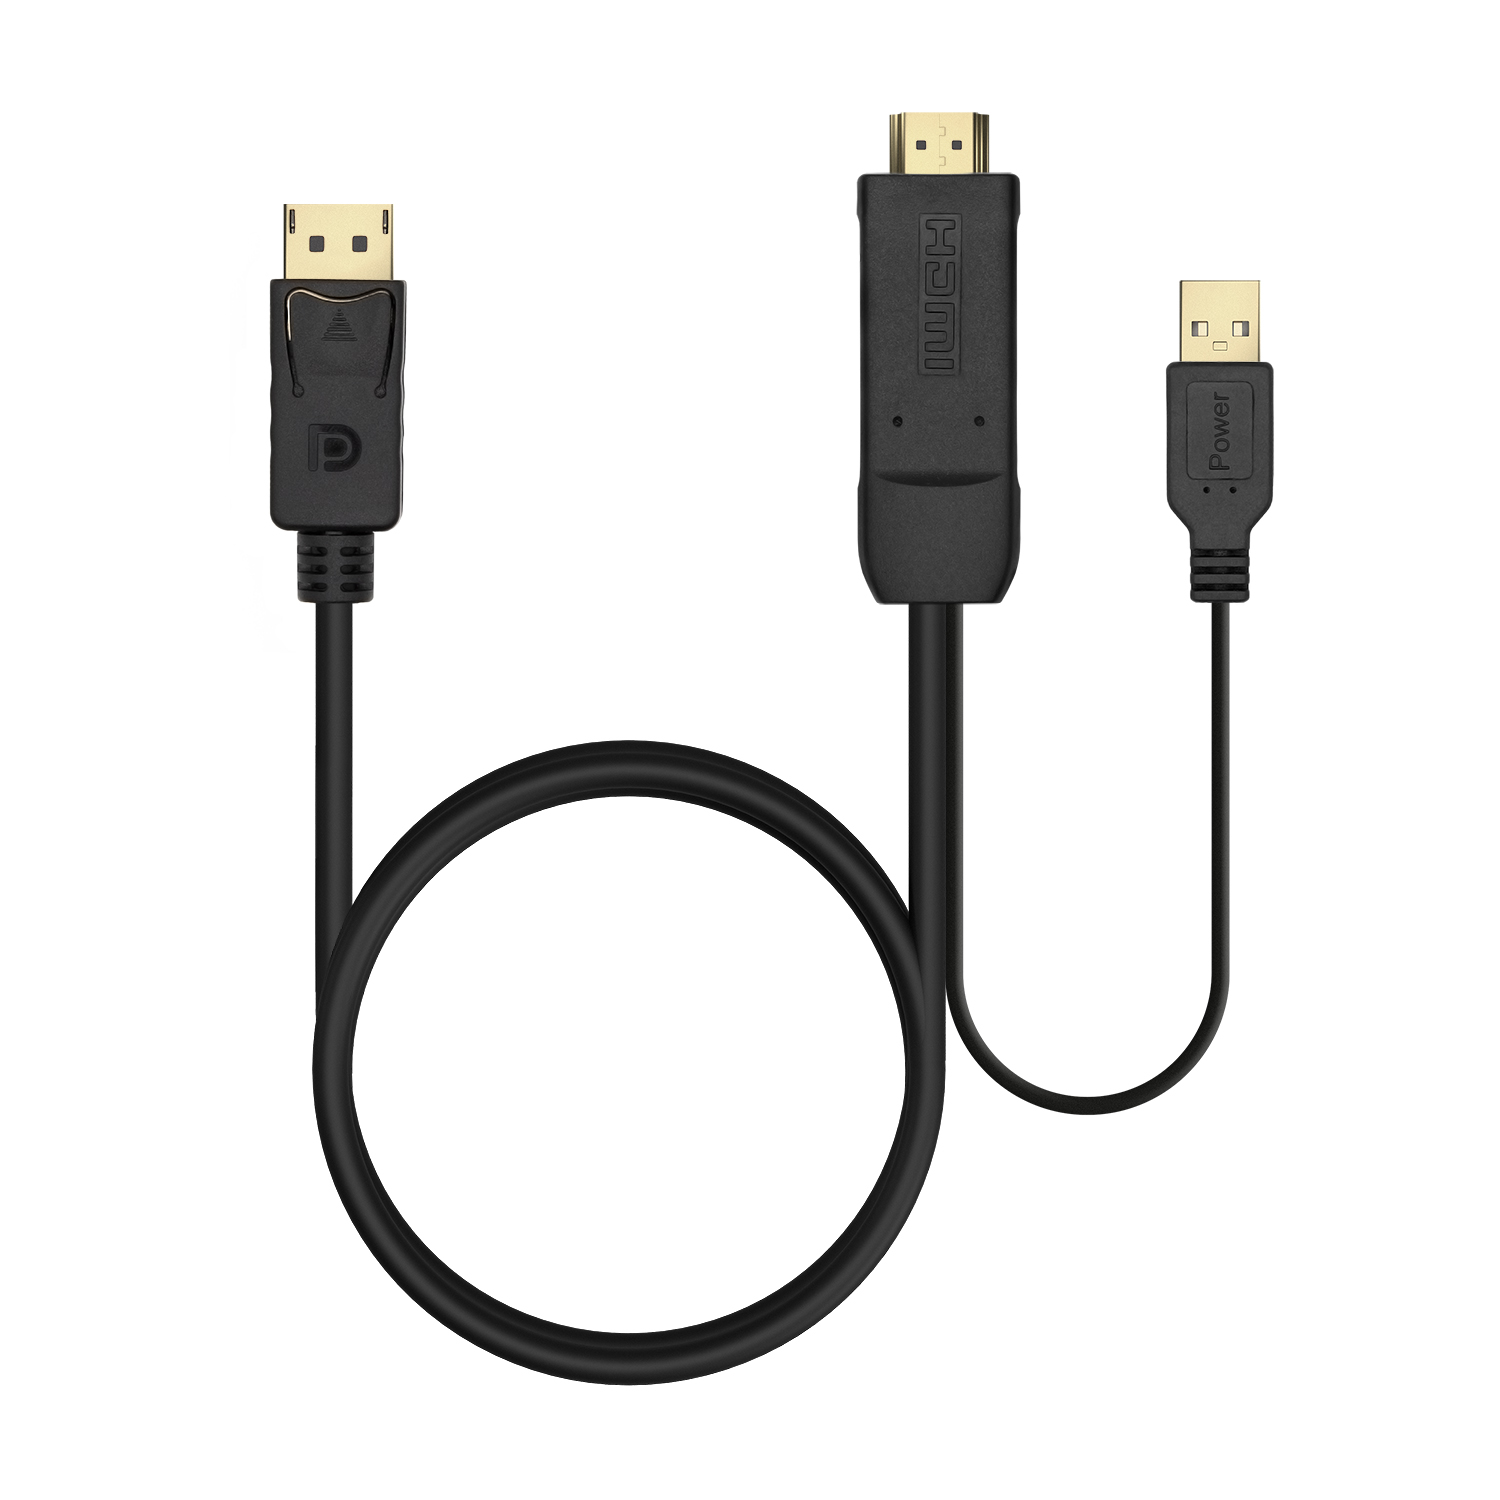 AISENS - Cable Conversor Activo HDMI 2.0 + USB Alim. a DISPLAYPORT V1.2,  HDMI/M-USB/M-DP/M, Negro, 1.8M - AISENS®